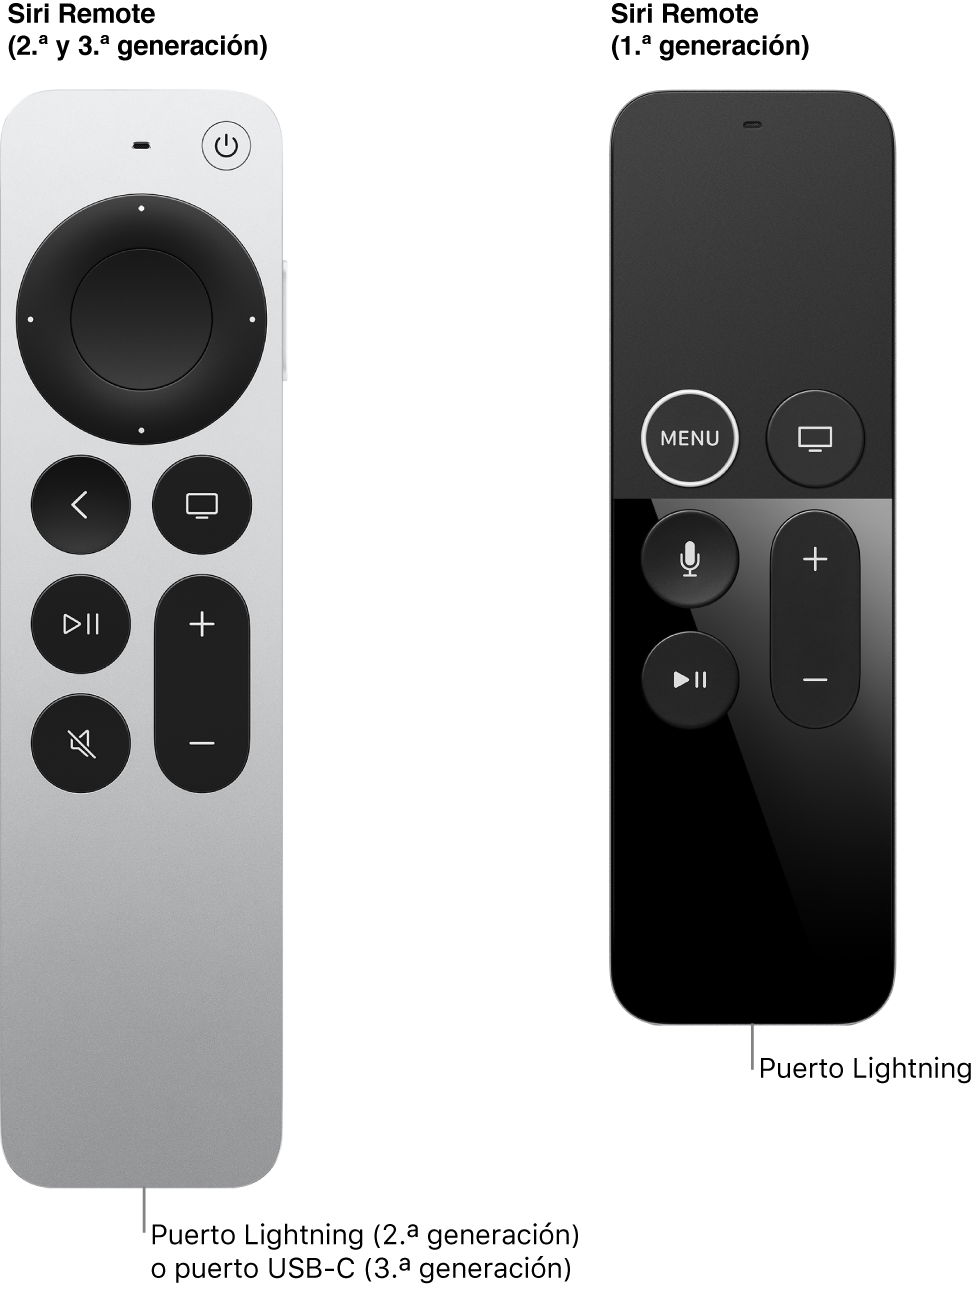 Imagen del mando Siri Remote (2.ª y 3.ª generación) y del mando Siri Remote (1.ª generación) con el puerto para conector